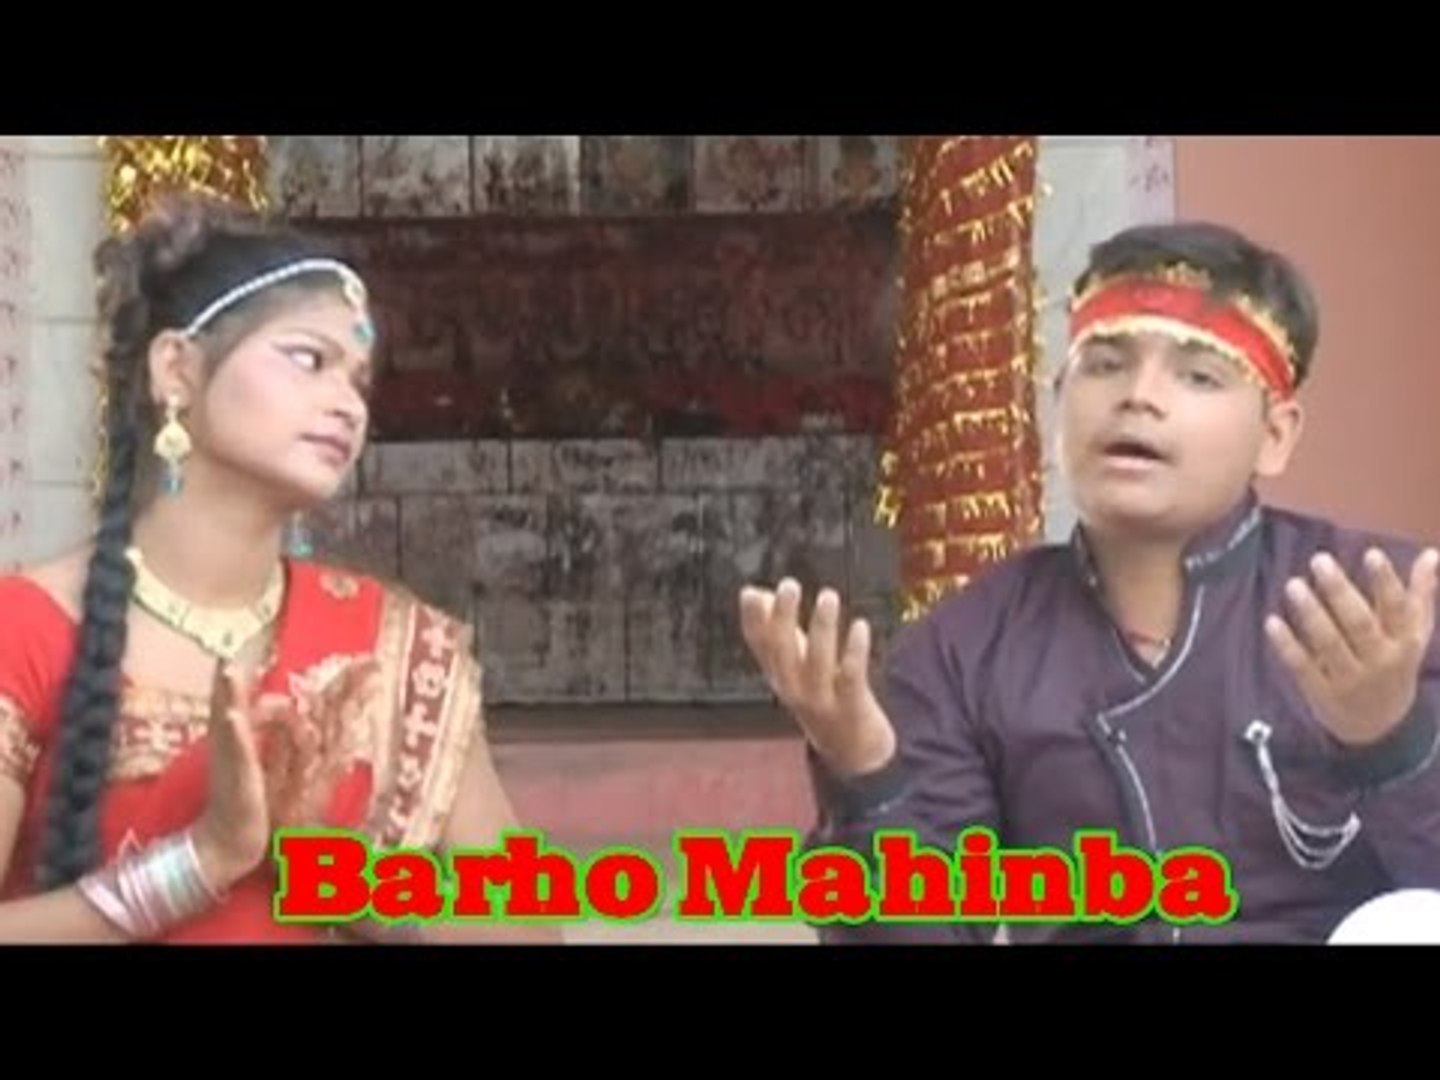 BARHO MAHINBA | SONAL SINGH | BHAKTI SONGS